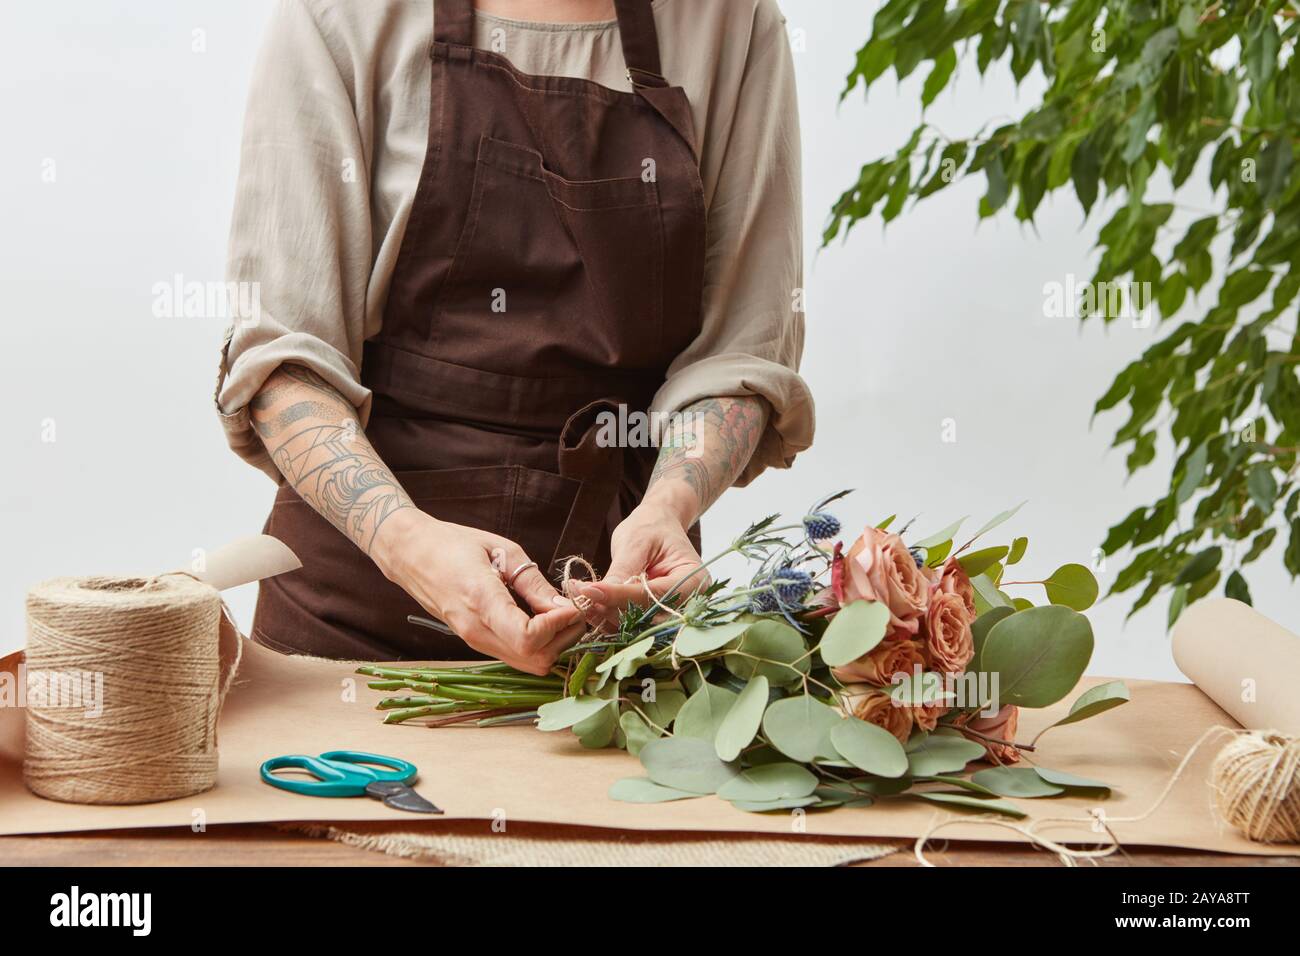 La femme fleuriste crée un bouquet de roses fraîches sur un fond gris. Traiter étape par étape. Petite entreprise avec livraison de fleurs. M Banque D'Images